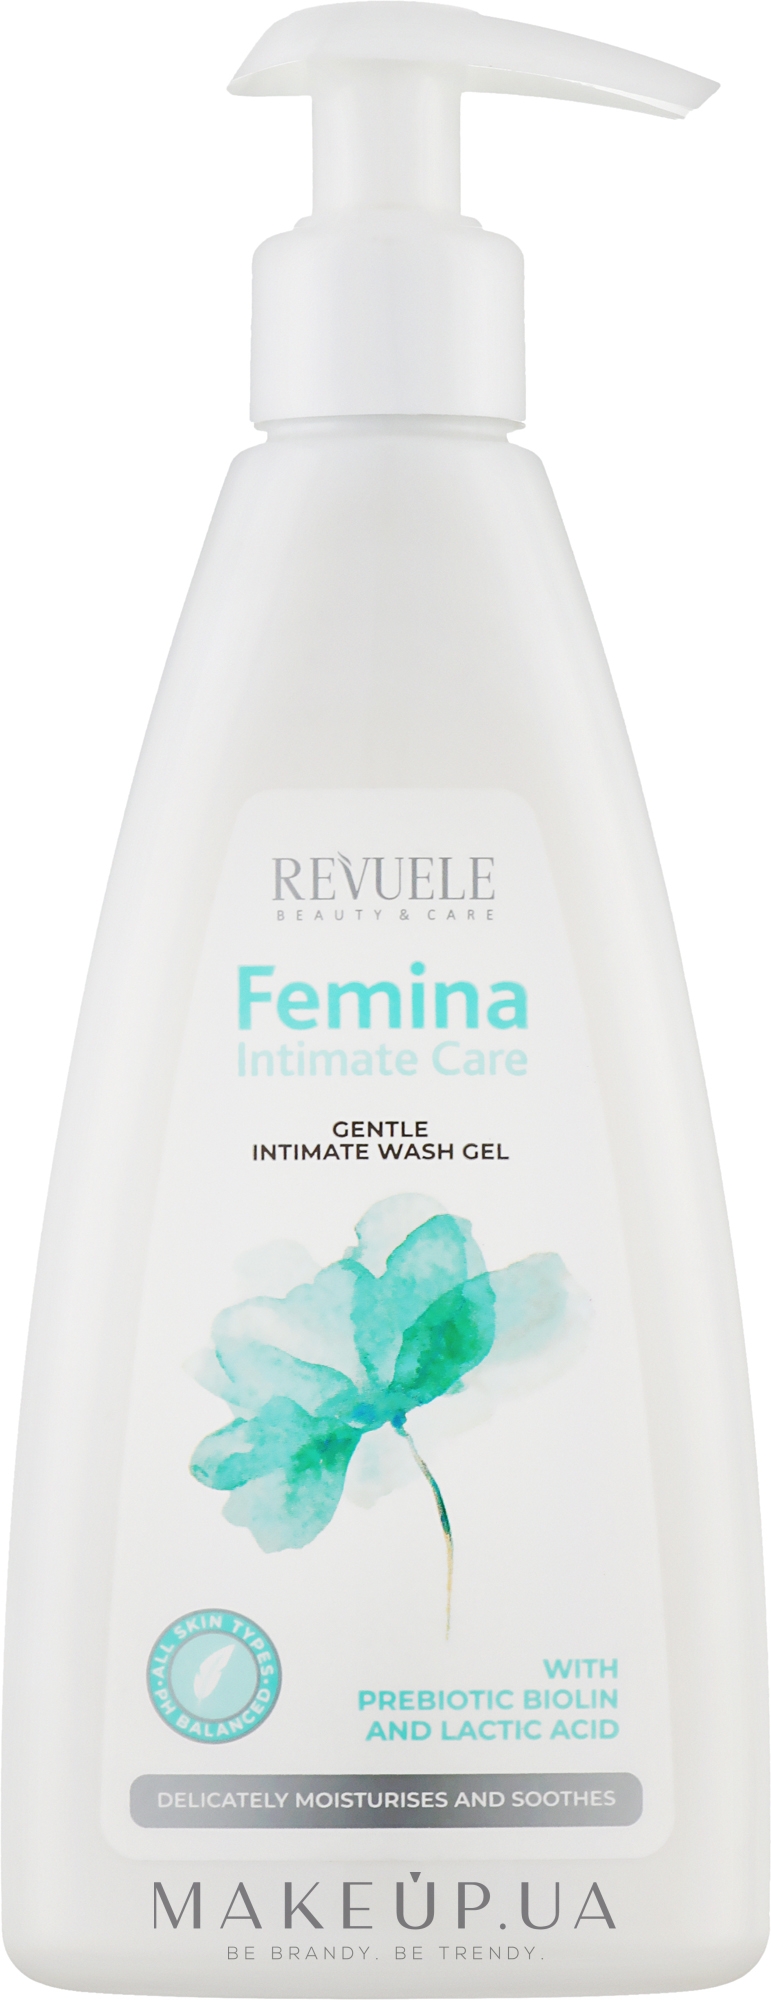 Ніжний гель для інтимної гігієни - Revuele Femina Intimate Care Gentle Intimate Wash Gel — фото 250ml